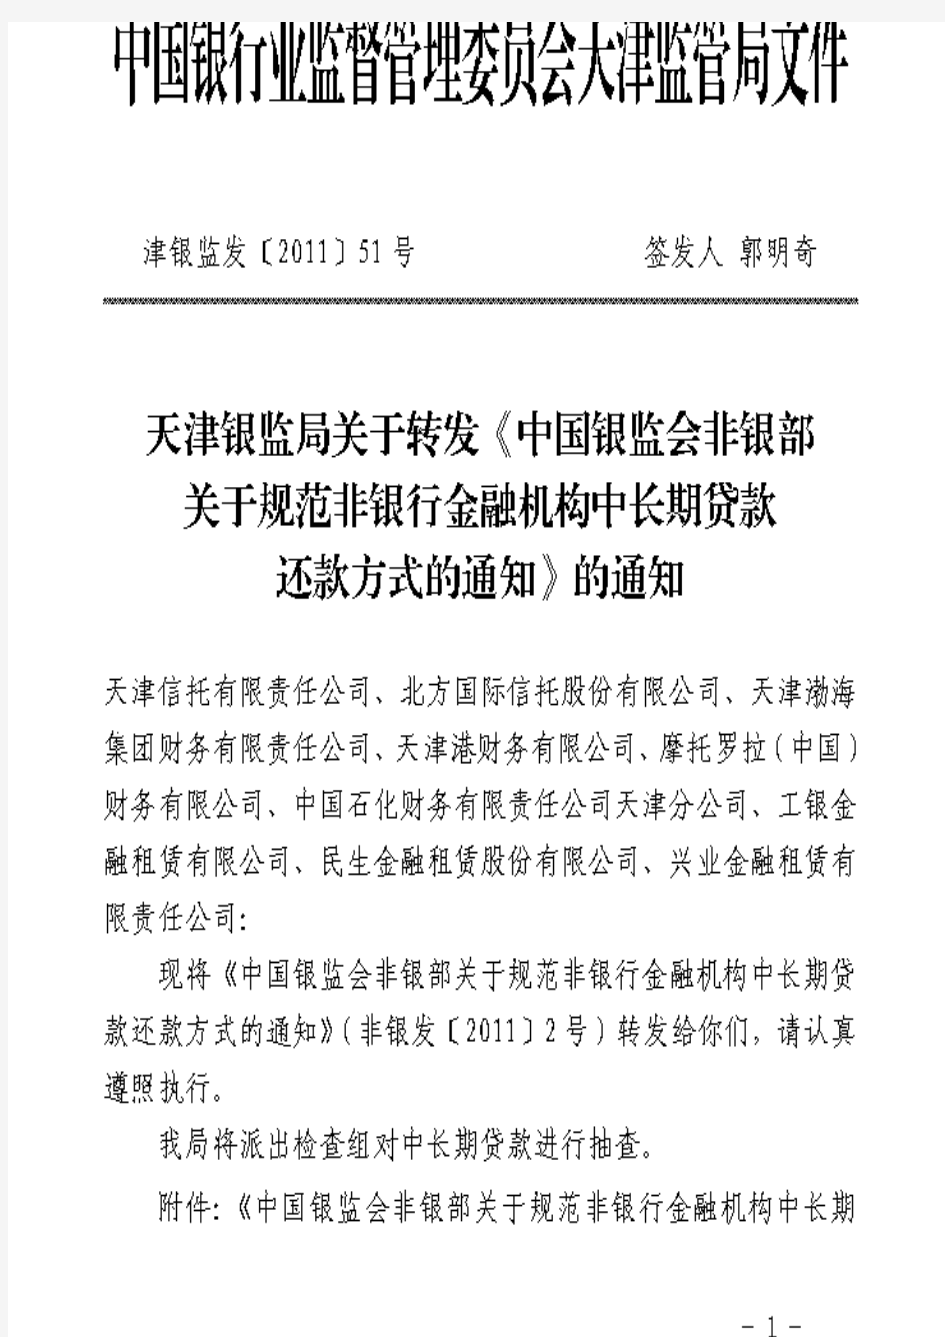 天津银监局关于转发《中国银监会非银部关于规范非银行金融机构中长期贷款还款方式的通知》的通知